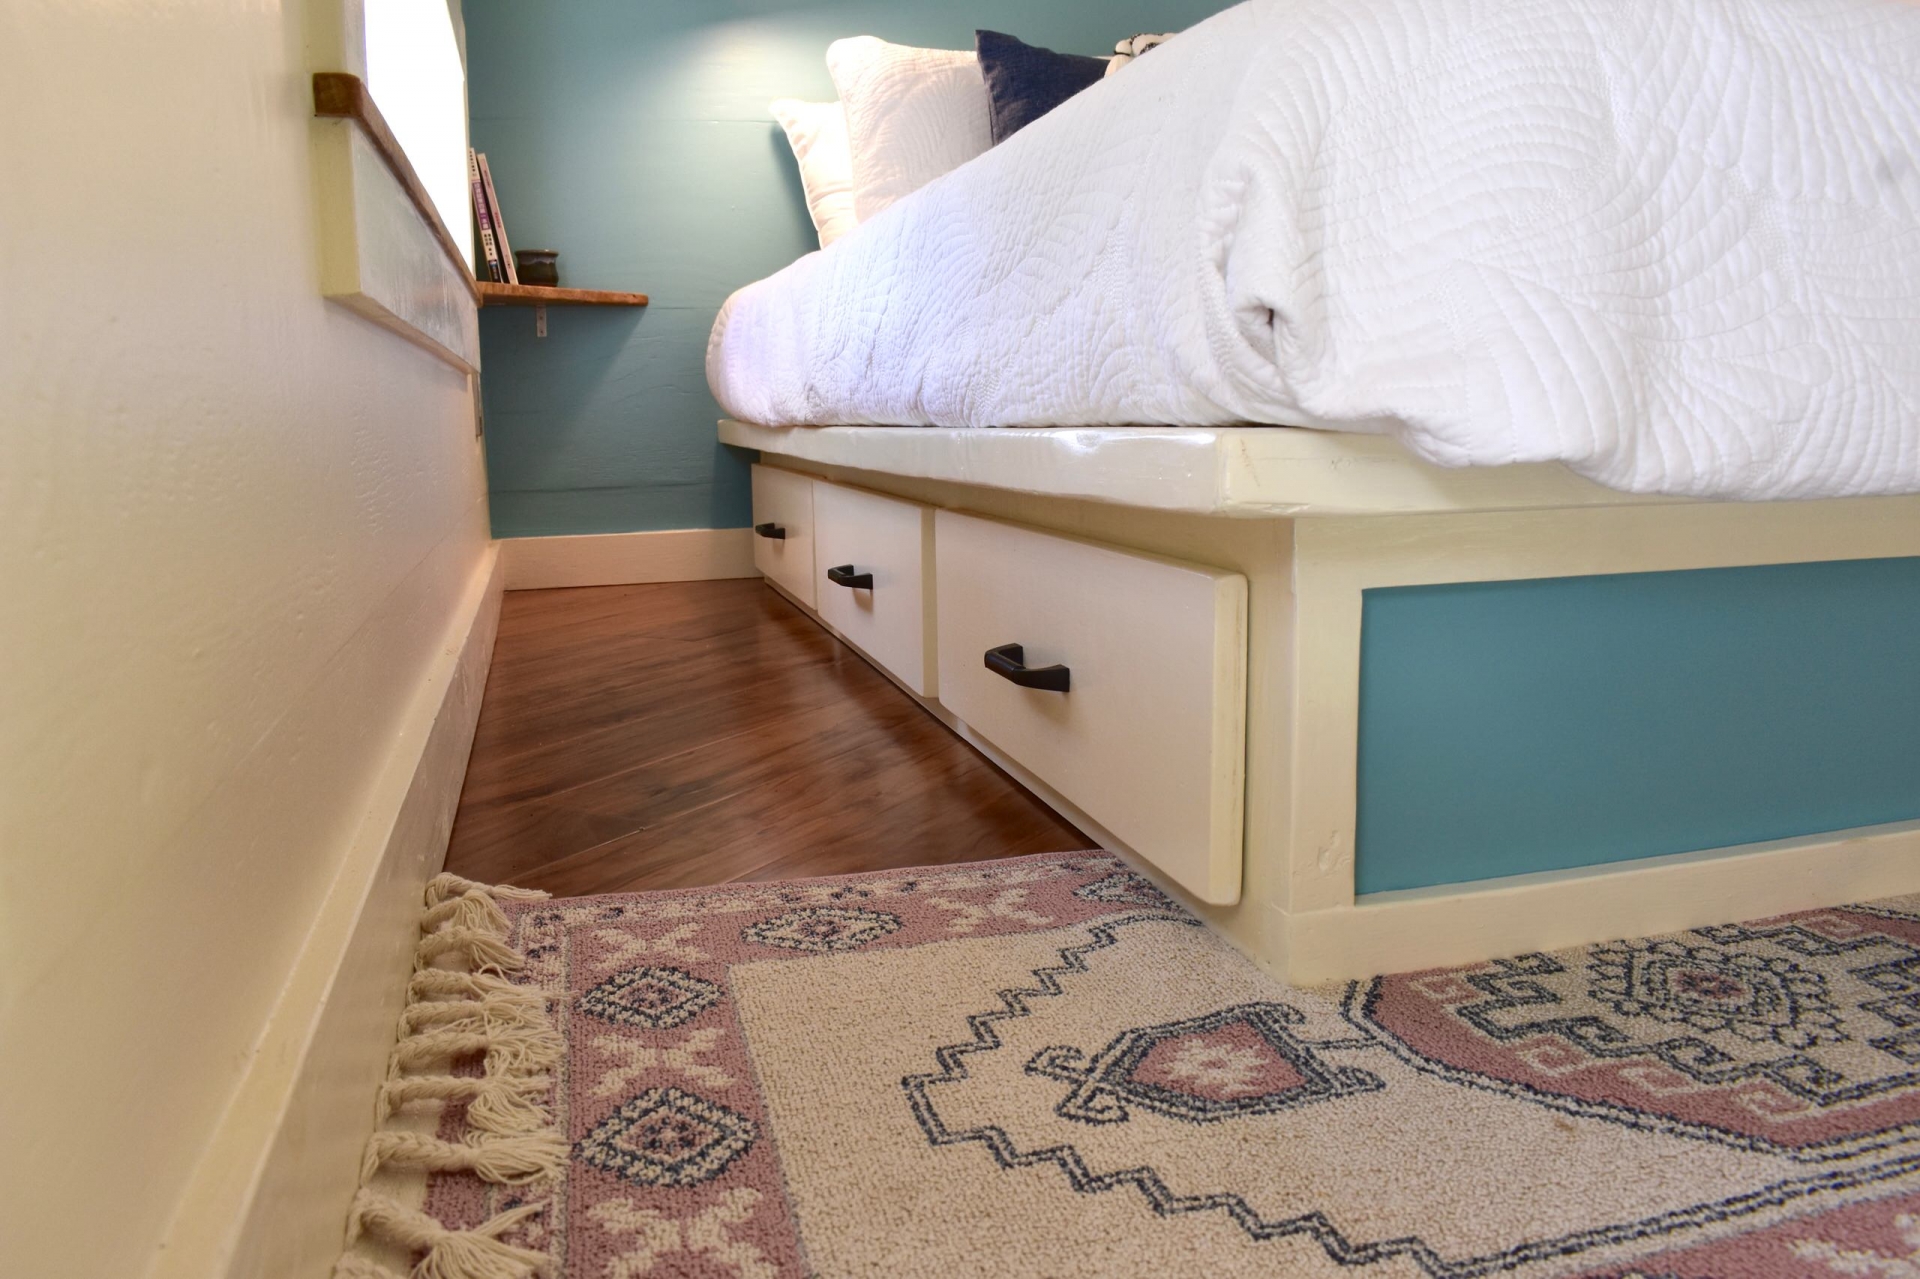 Chiếc giường tích hợp các hộc lưu trữ ẩn bên dưới để tăng khả năng lưu trữ đồ đạc cho không gian luôn gọn gàng. Sàn gỗ ấm áp với tấm thảm dệt họa tiết thổ cẩm nhẹ nhàng, vừa giữ vệ sinh vừa làm điểm nhấn cho phòng ngủ.